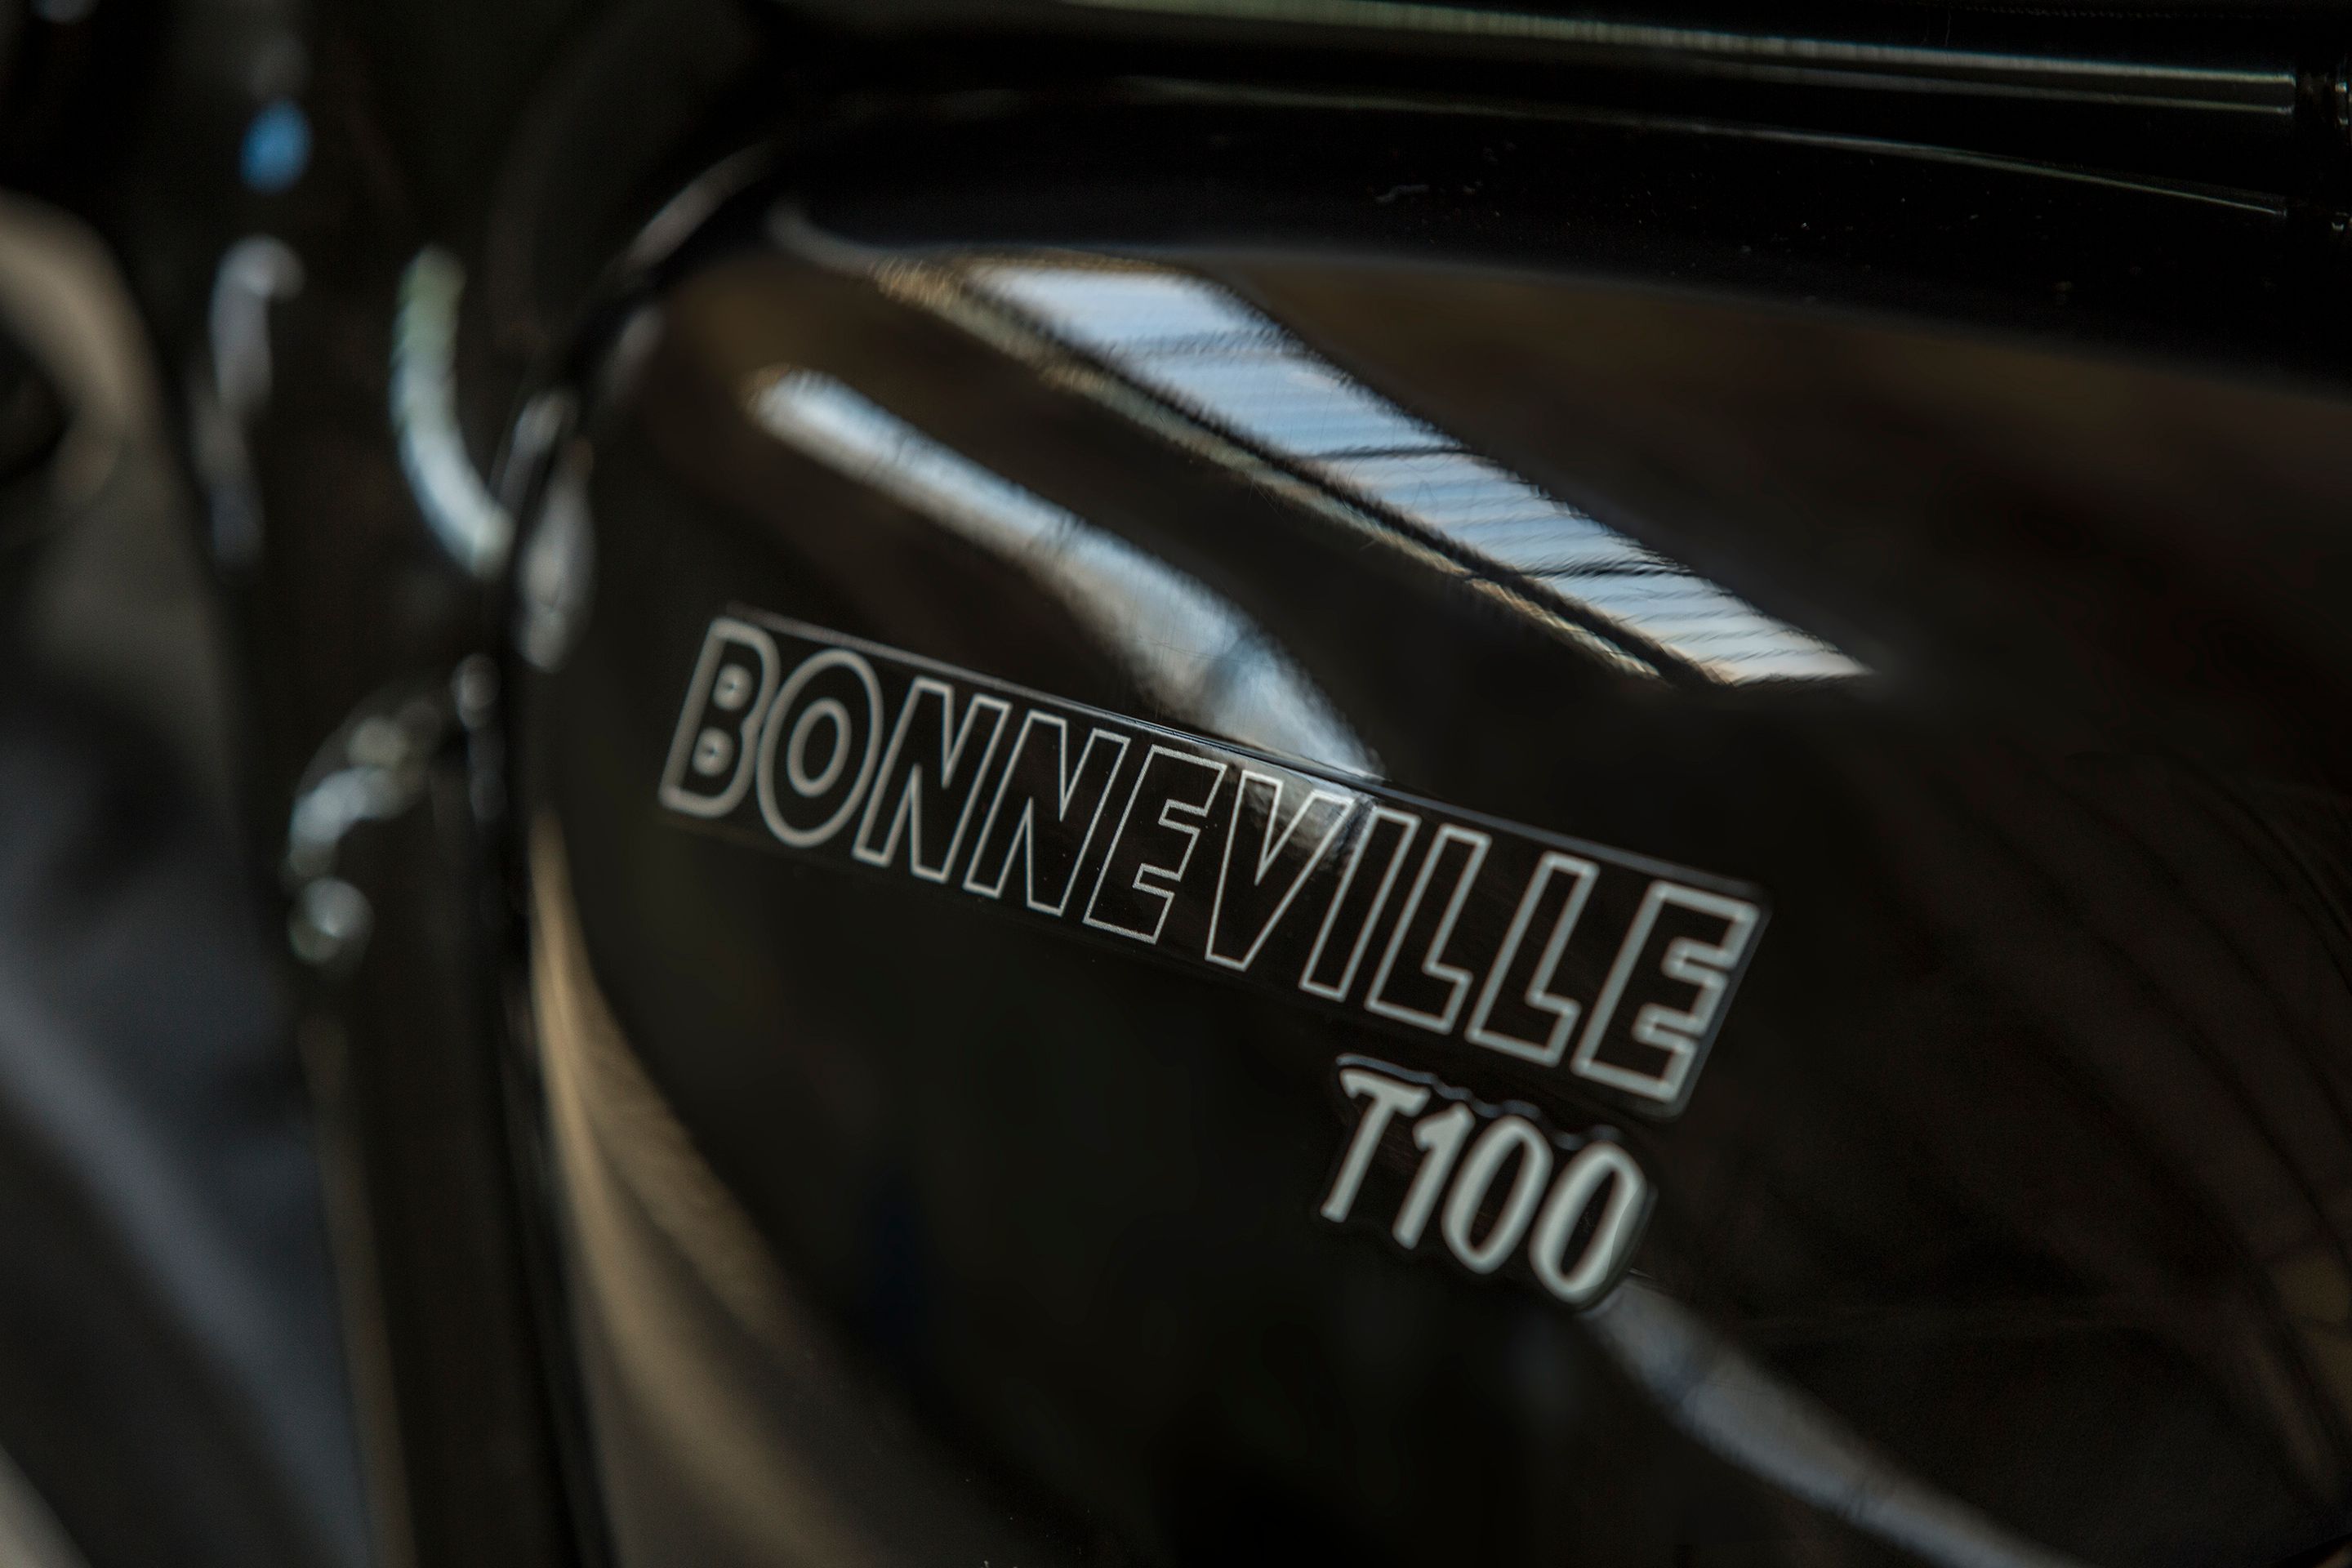 2016 - 2020 Triumph Bonneville T100 - T100 Black